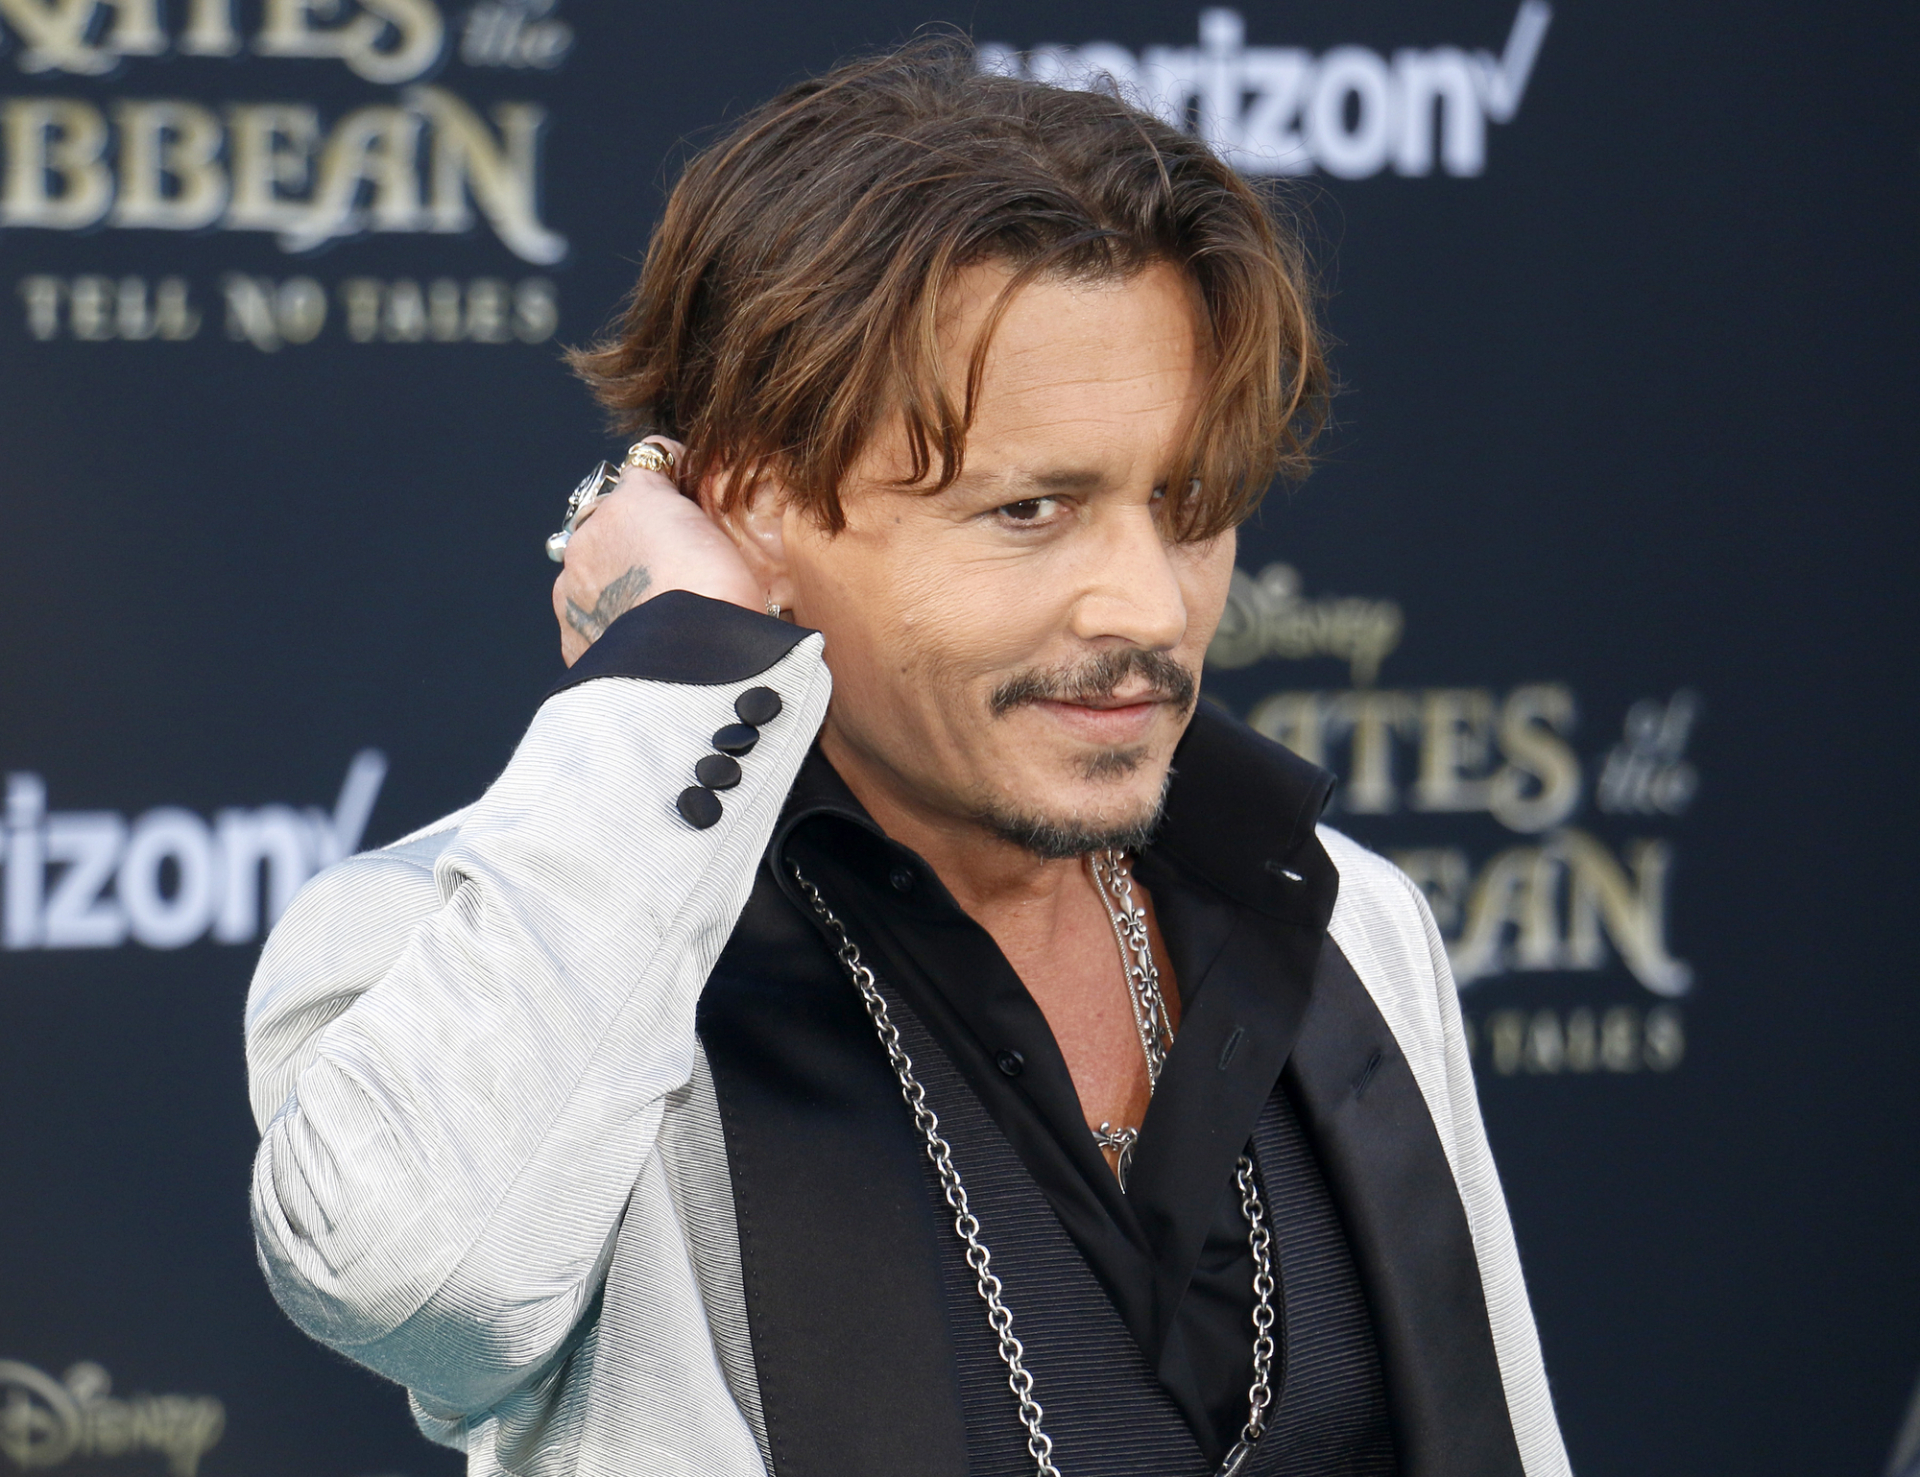 Johnny Depp veszített Amber Heard ellen